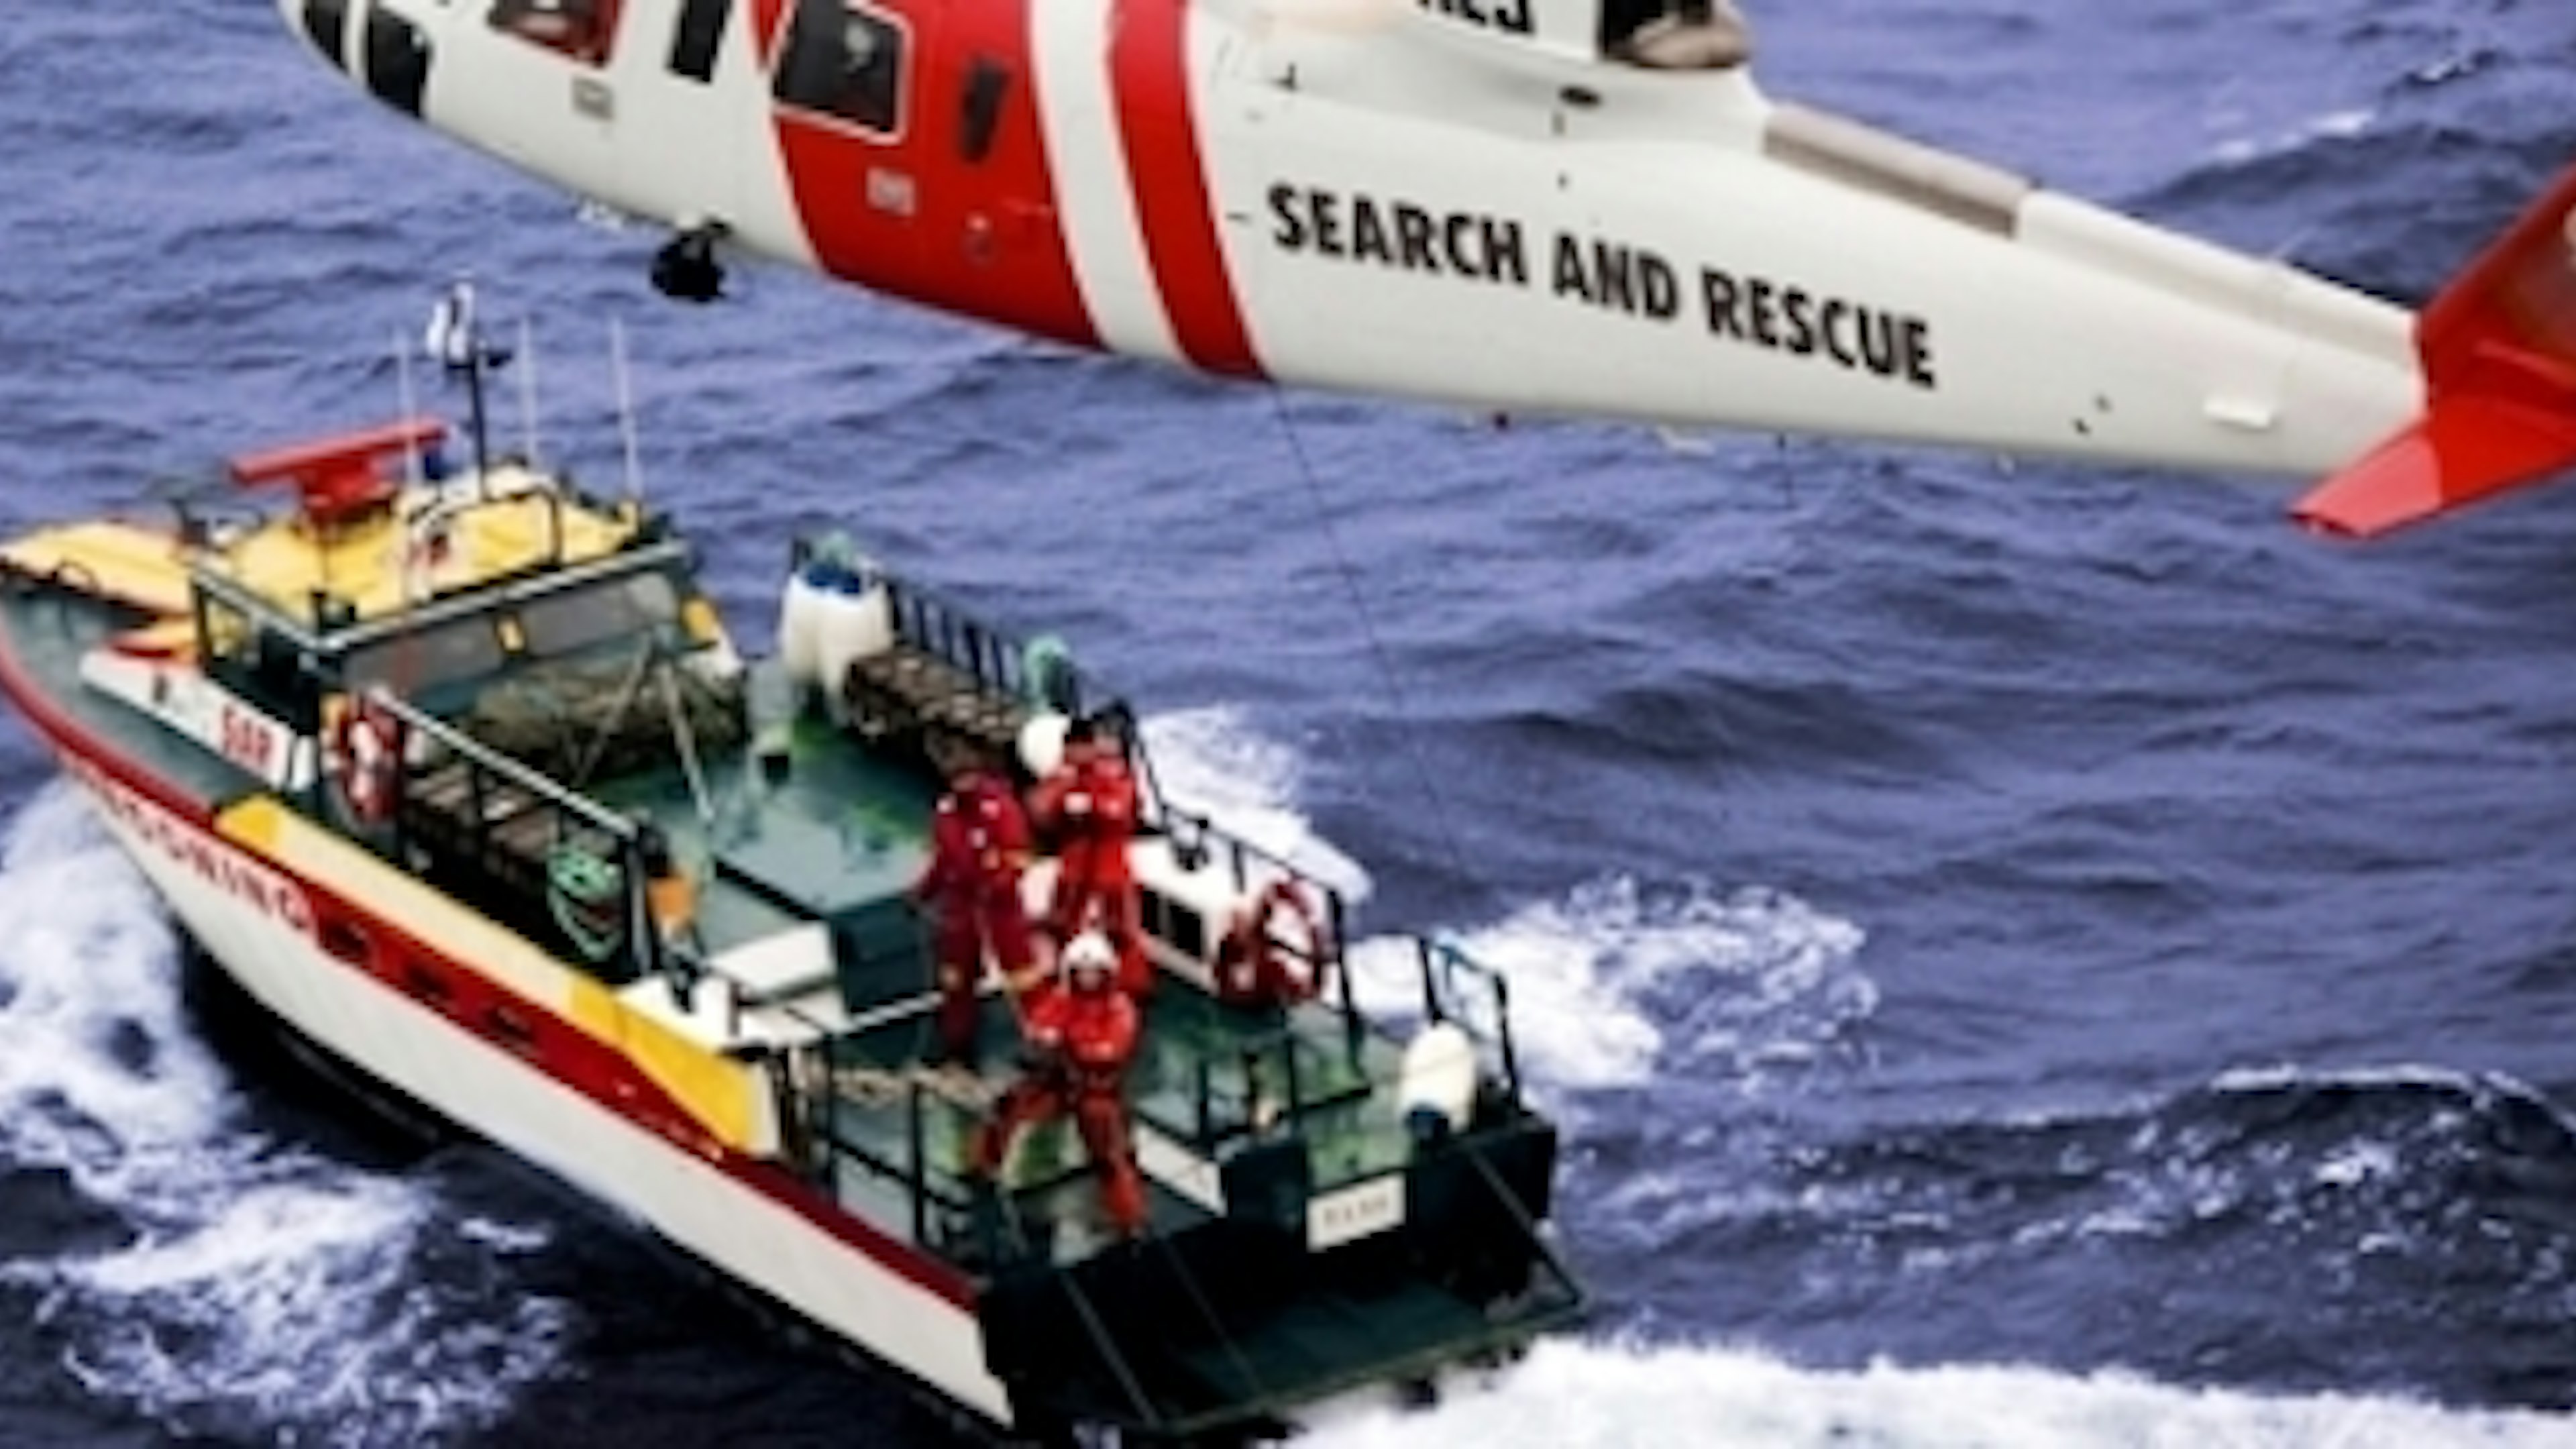 Vad sker på en övning i sjöräddning?